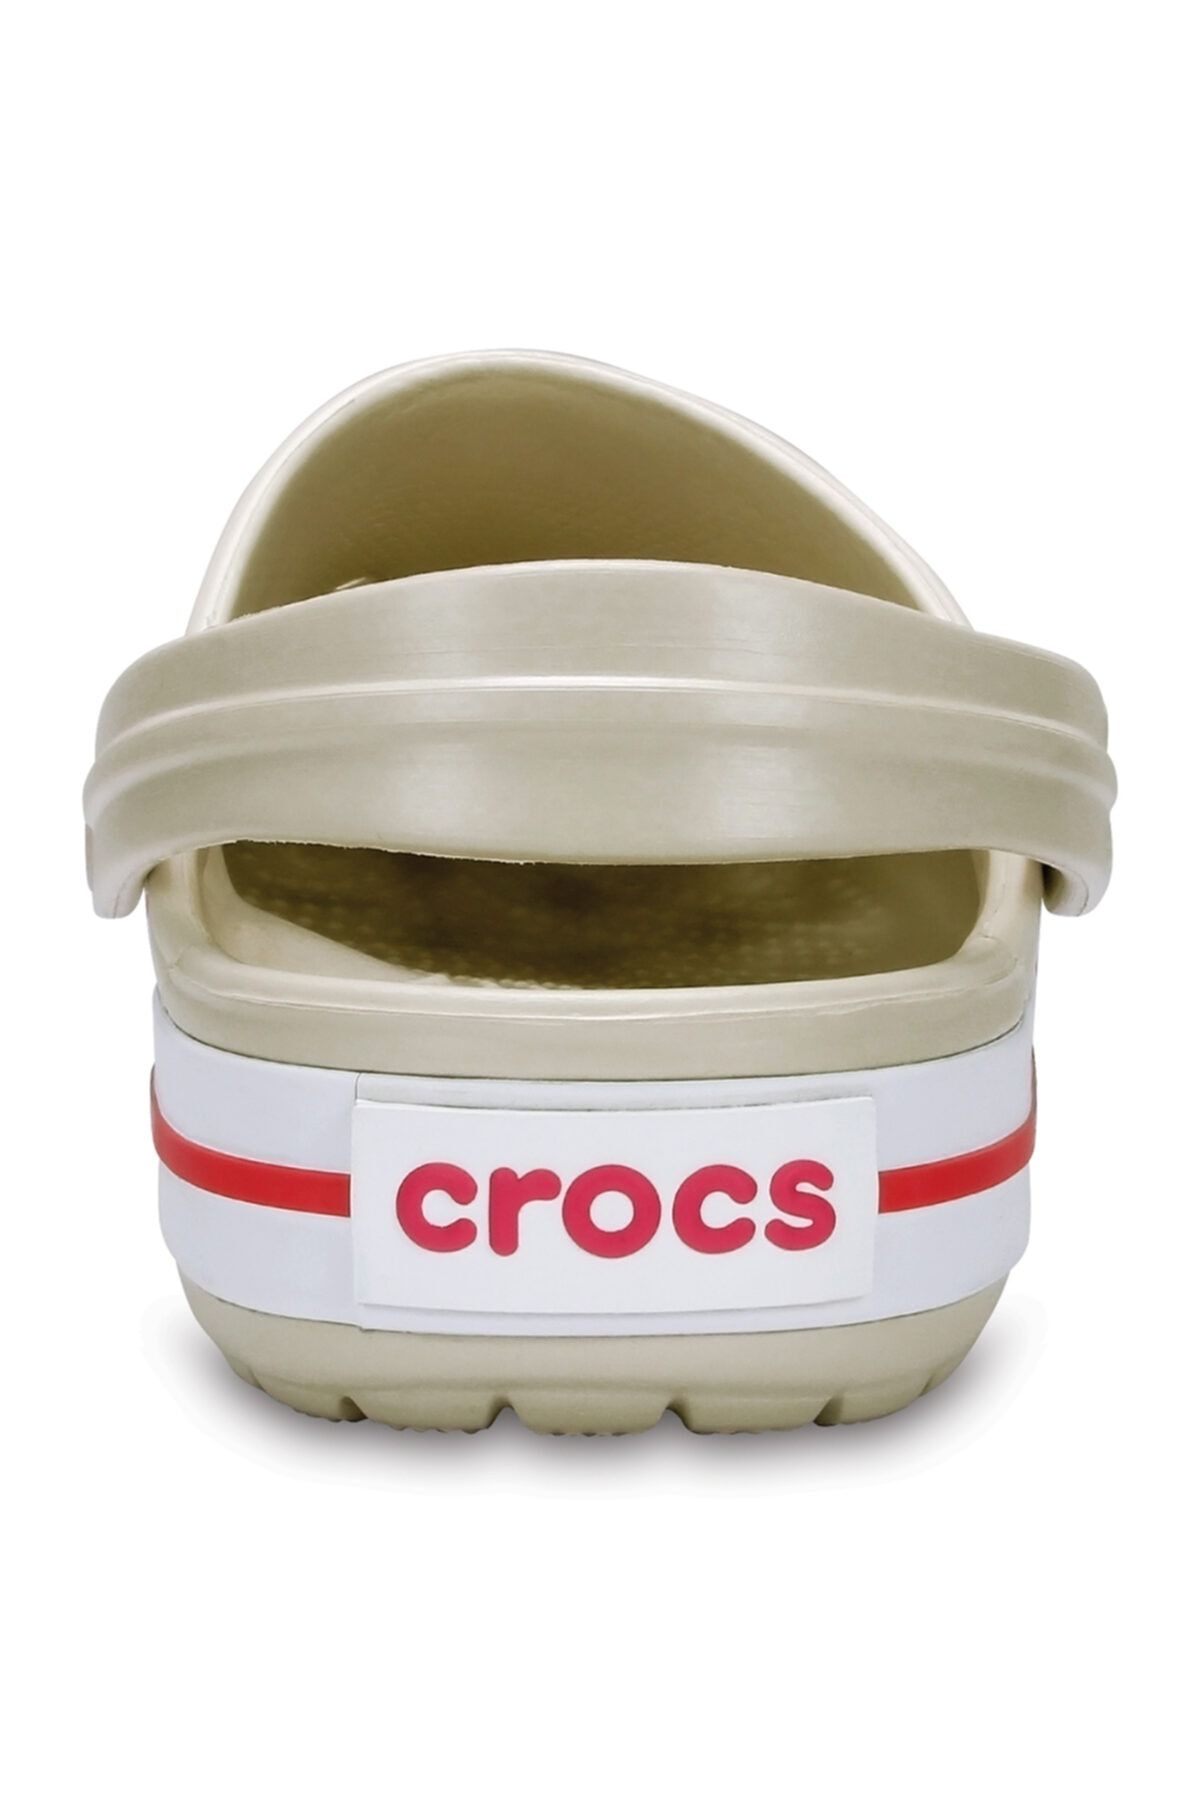 Crocs Crocband دمپایی گچ/خربزه